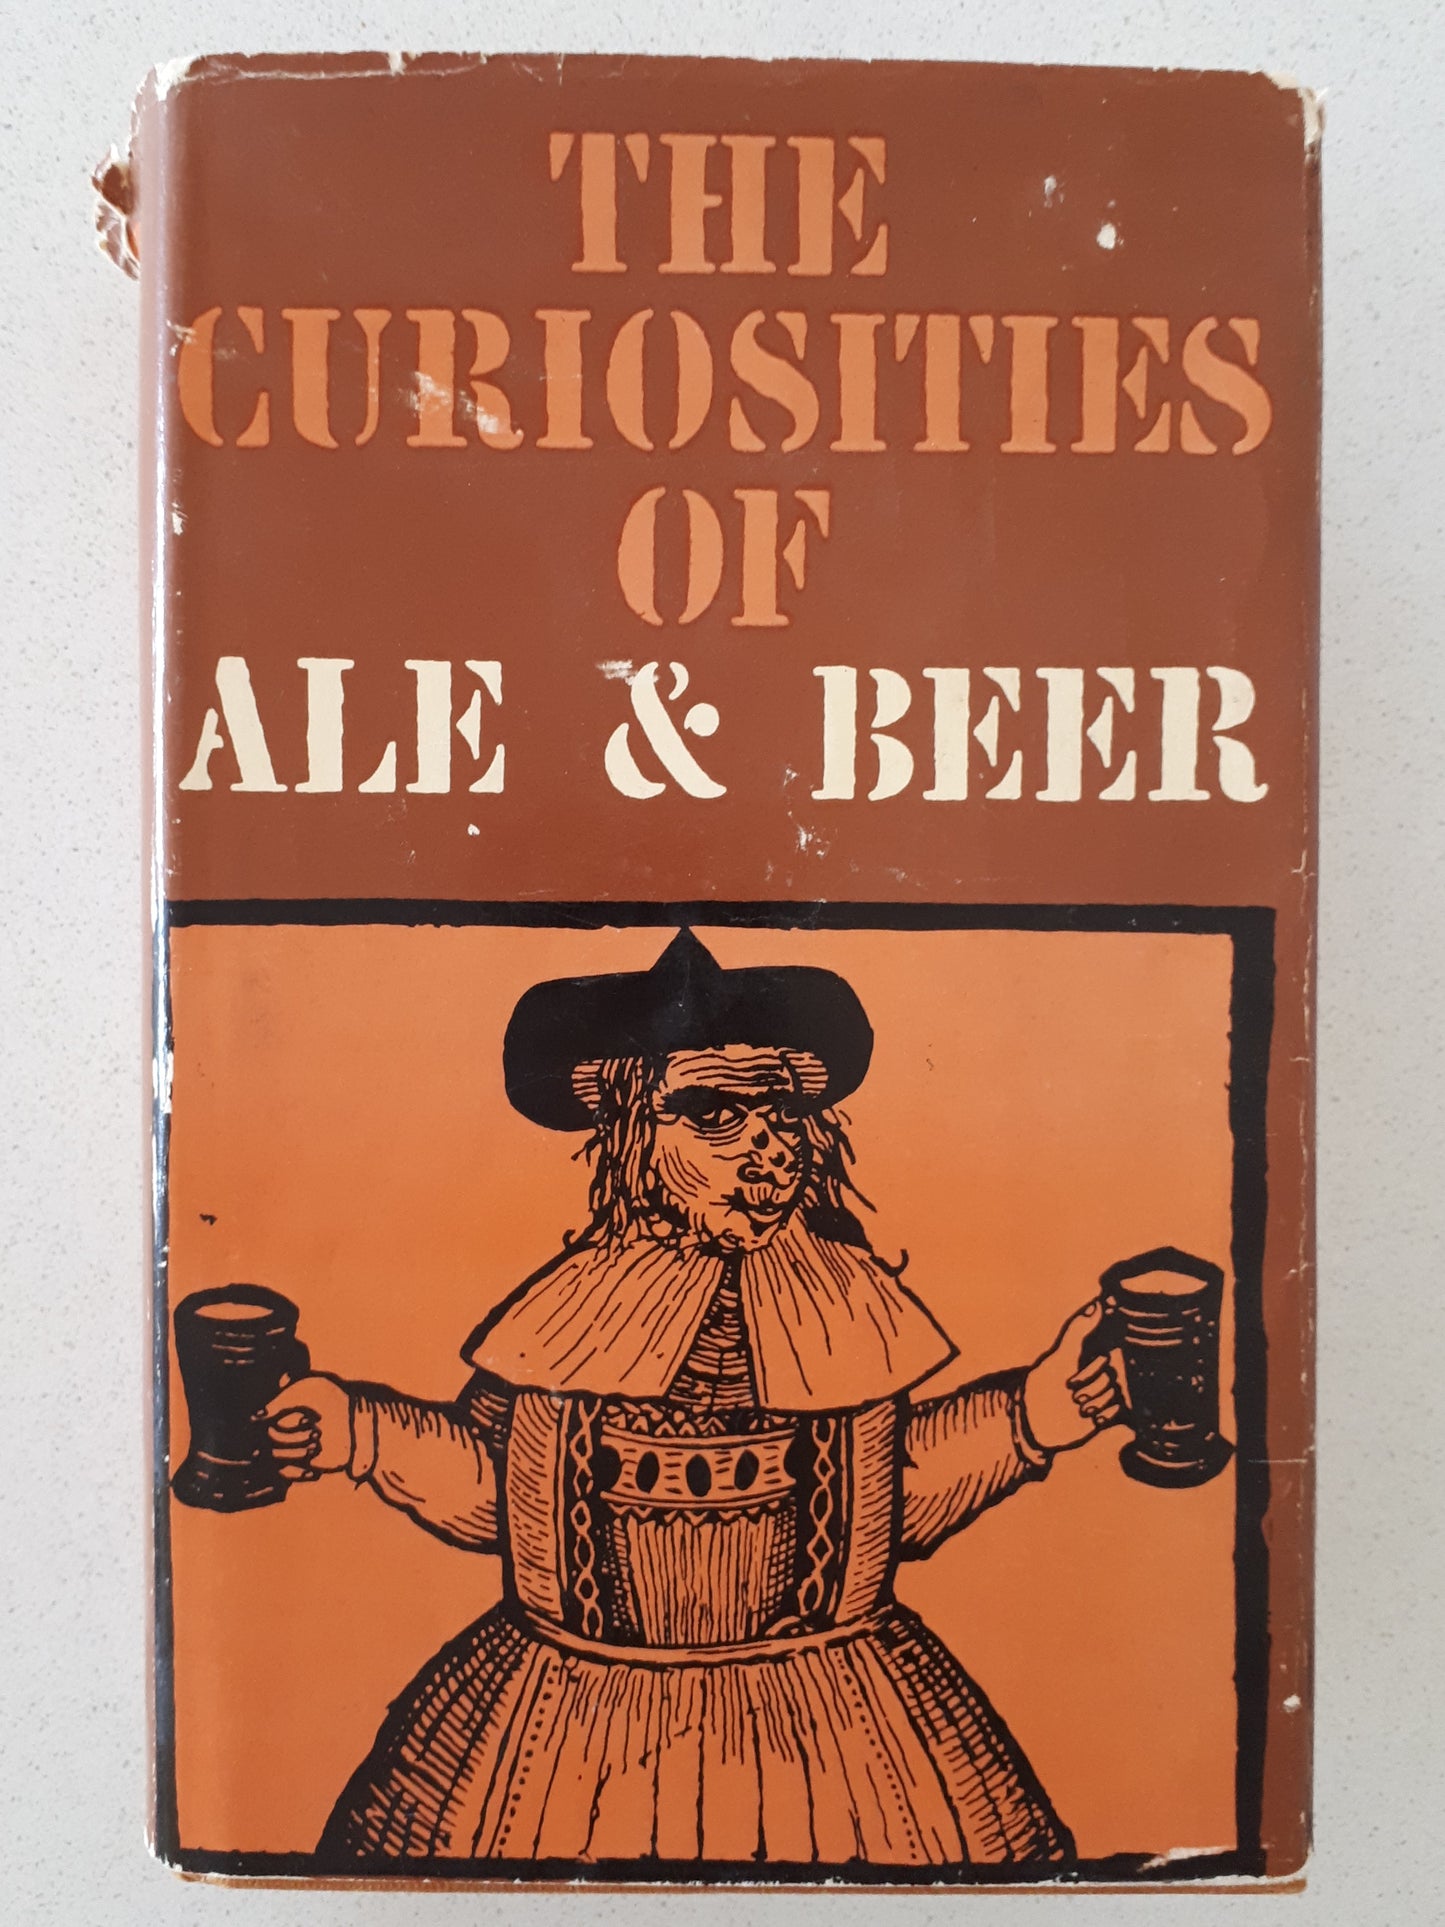 The Curiosities of Ale & Beer by John Bickerdyke